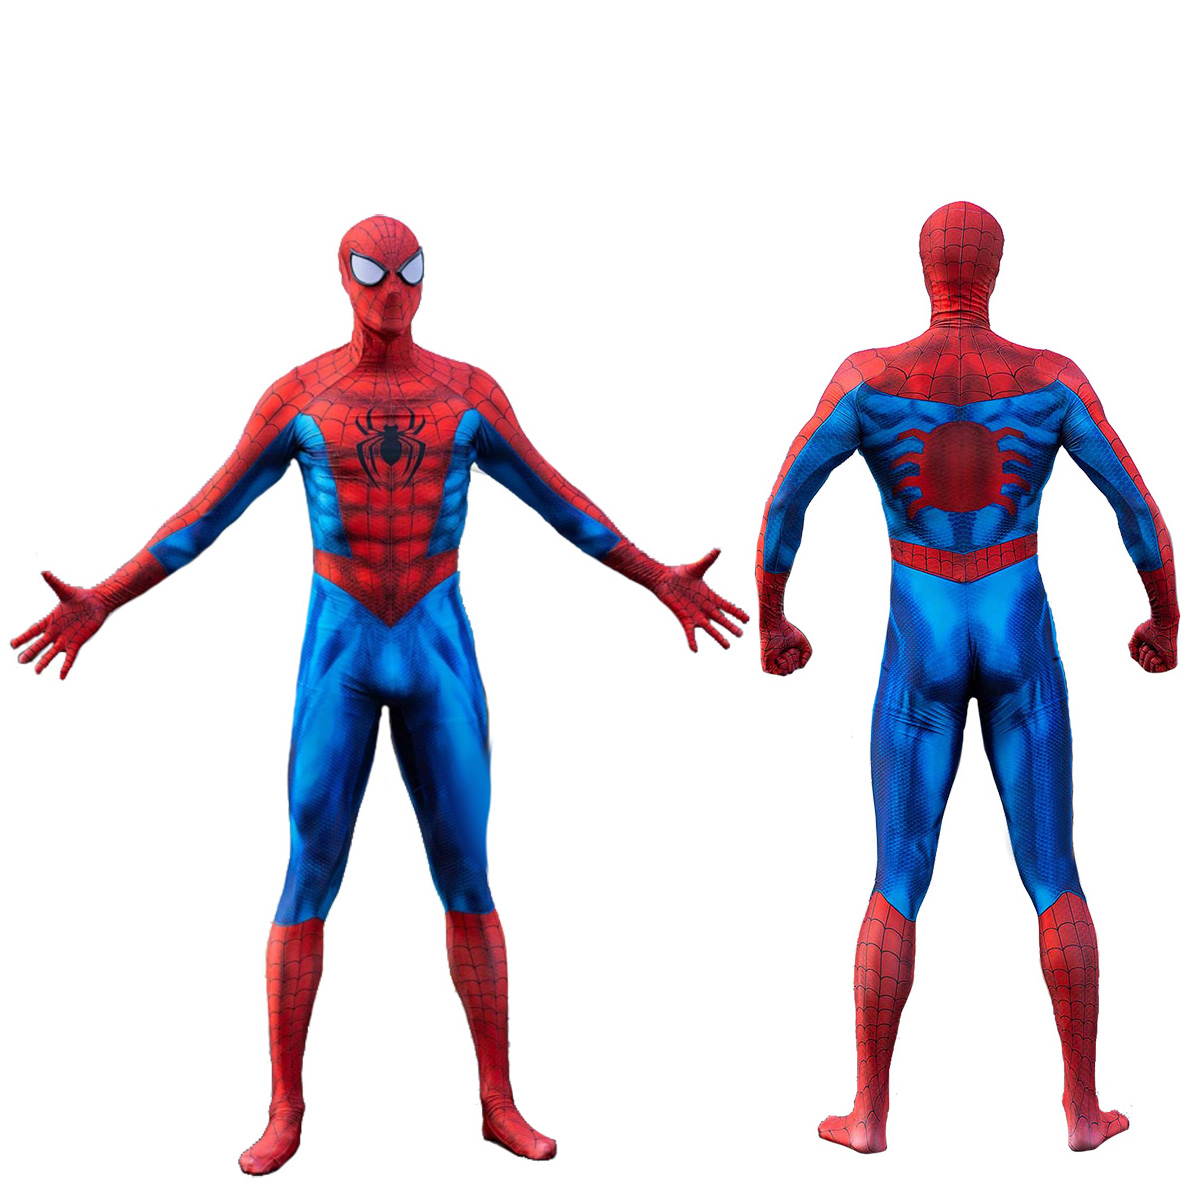 The Amazing Spider-Man Superhelden Cosplay Halloween Kostüm Cosplay BodySuit Der perfekte Look für jeden Superhelden-Fan